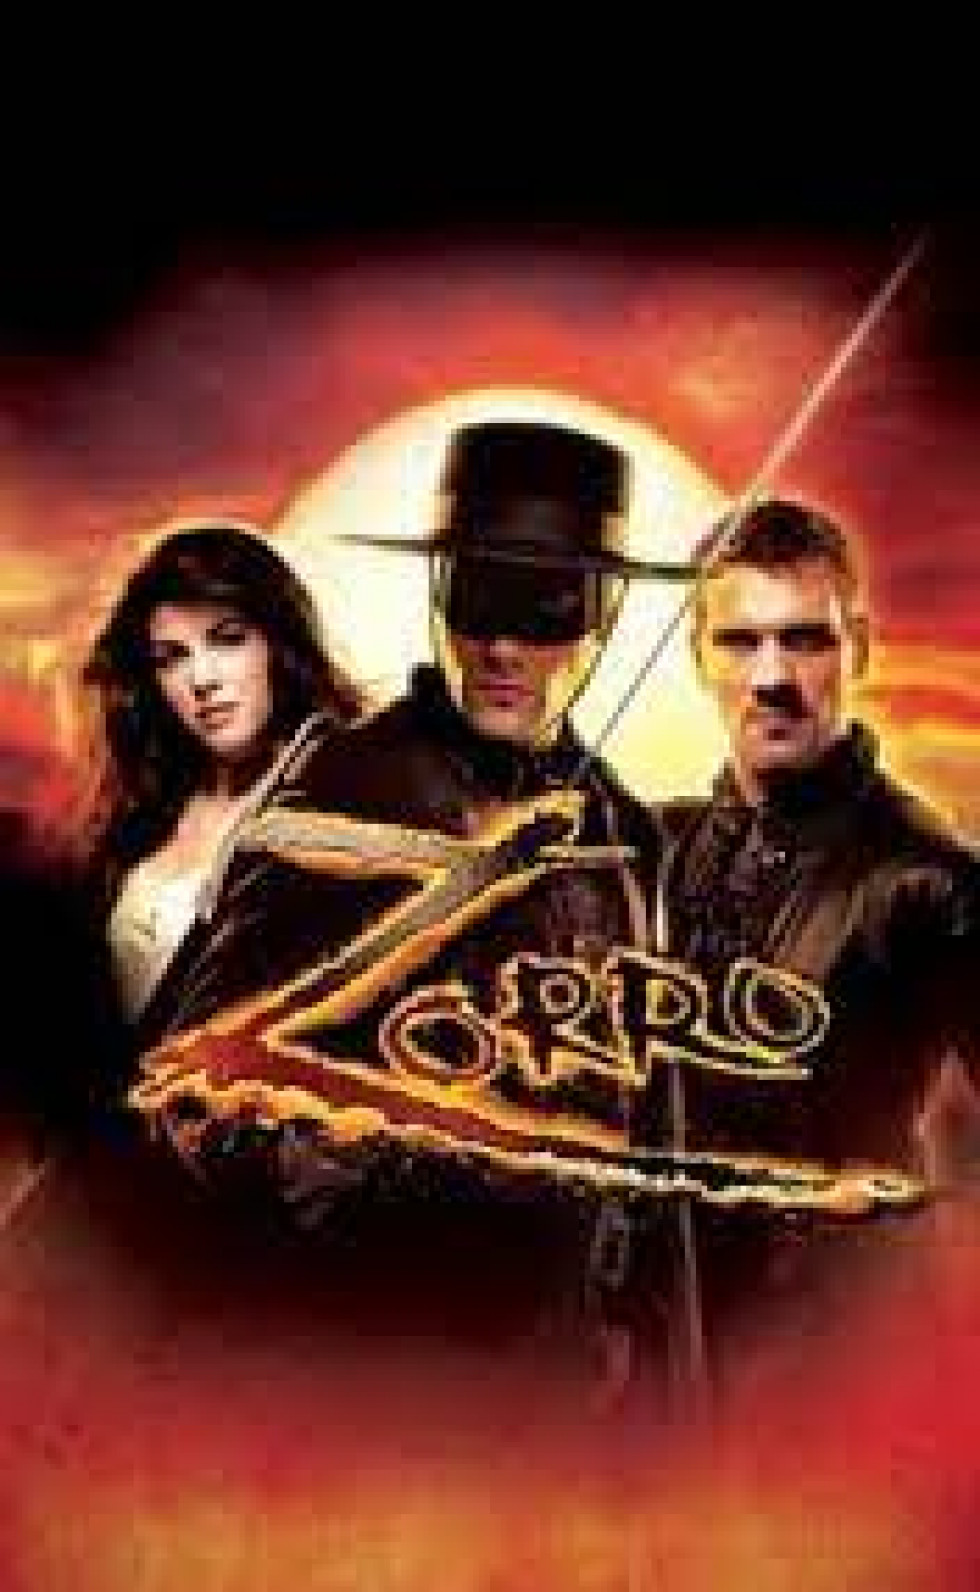 Zorro - Das Musical